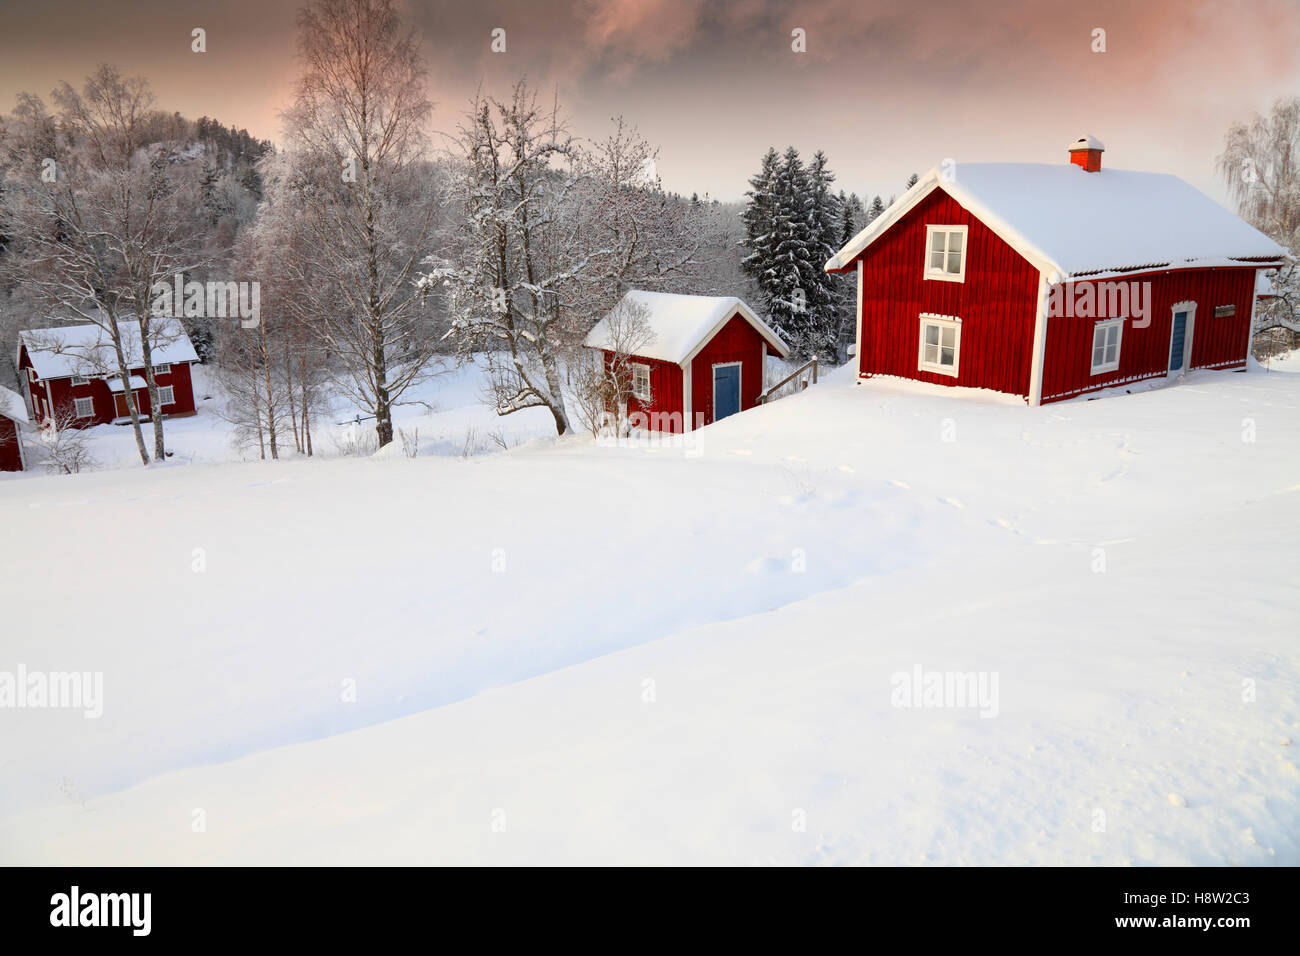 Vieux chalets entouré d'un paysage d'hiver enneigé dans les régions rurales de la Suède Banque D'Images